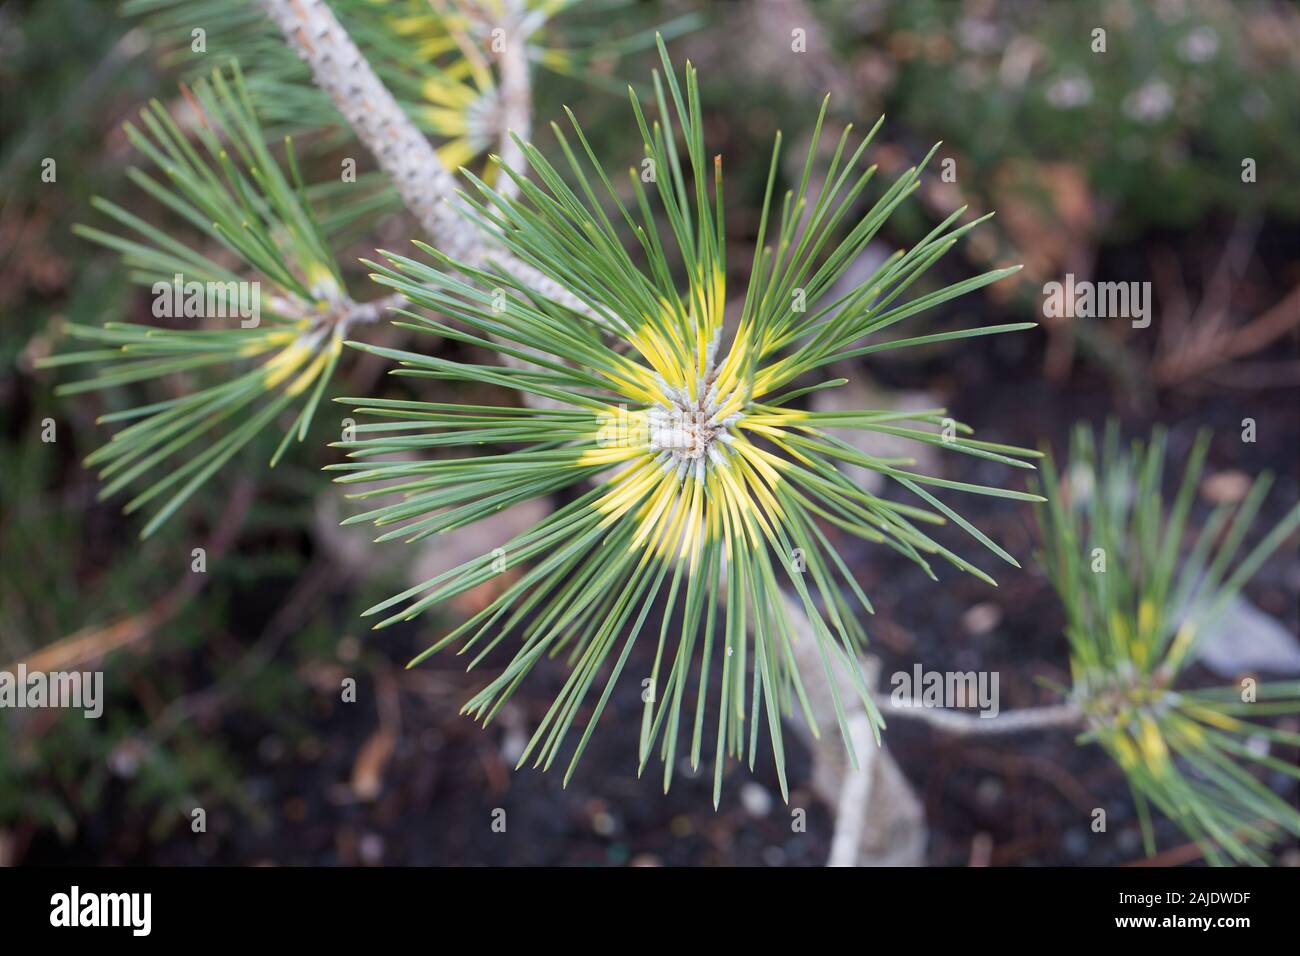 Pinus densiflora x thunbergii 'Beni kujaku' Japanese pine, close up. Stock Photo